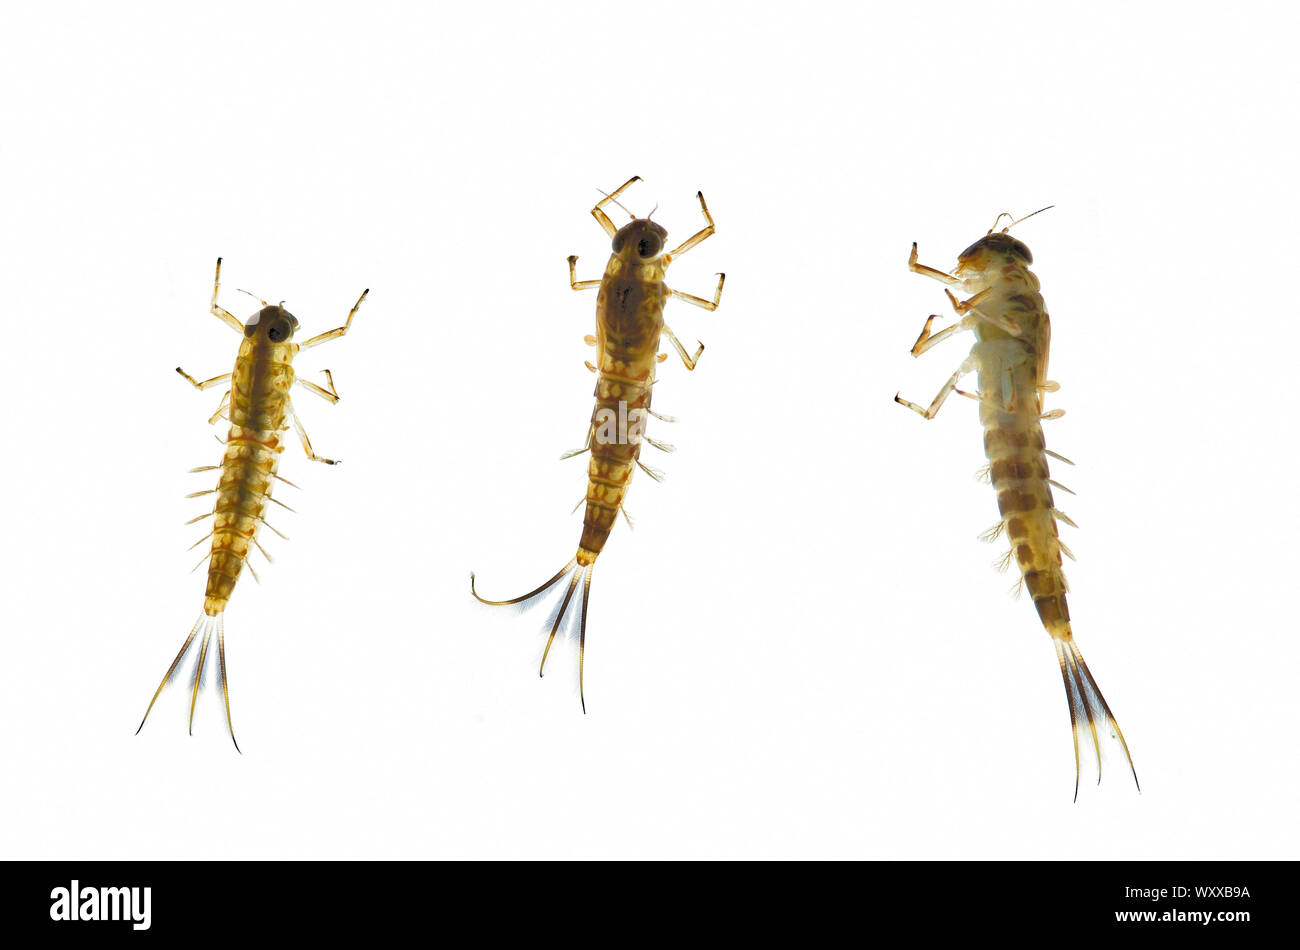 Las larvas o estadio ninfal (acuático) de Ameletid Minnow efímeras, Condado de Shasta, California, EE.UU. Foto de stock